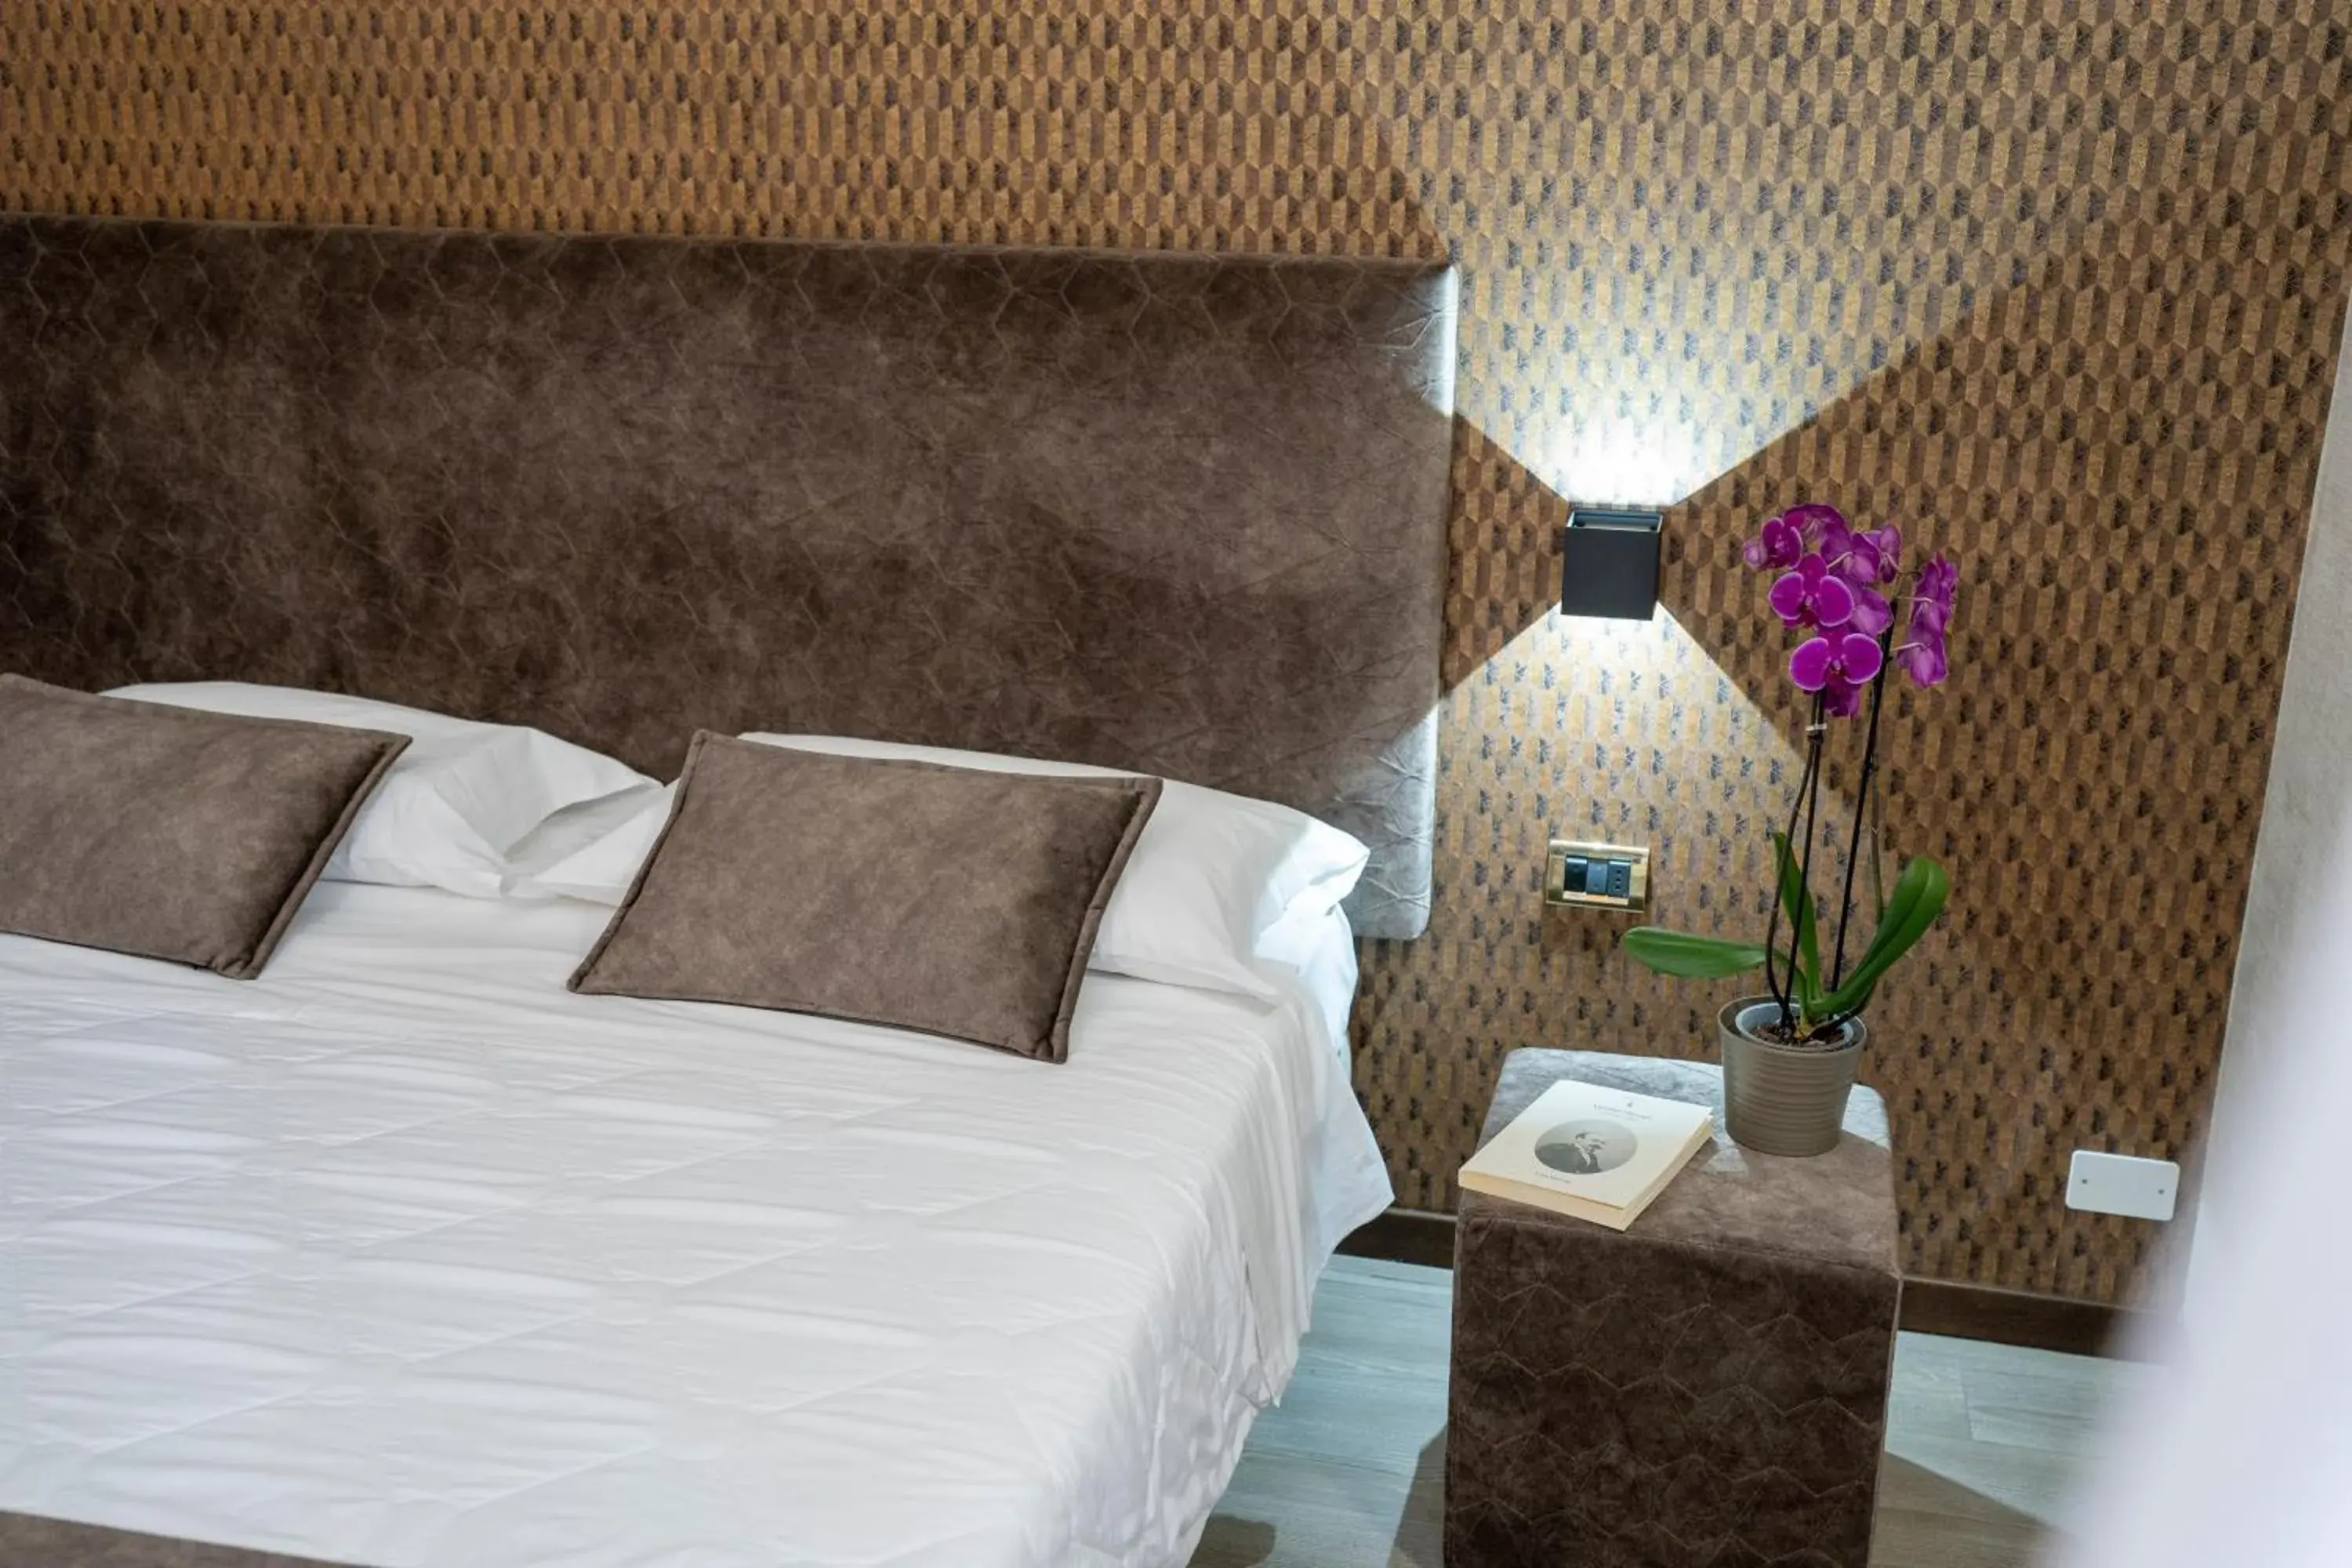 Bed in Hotel Astoria